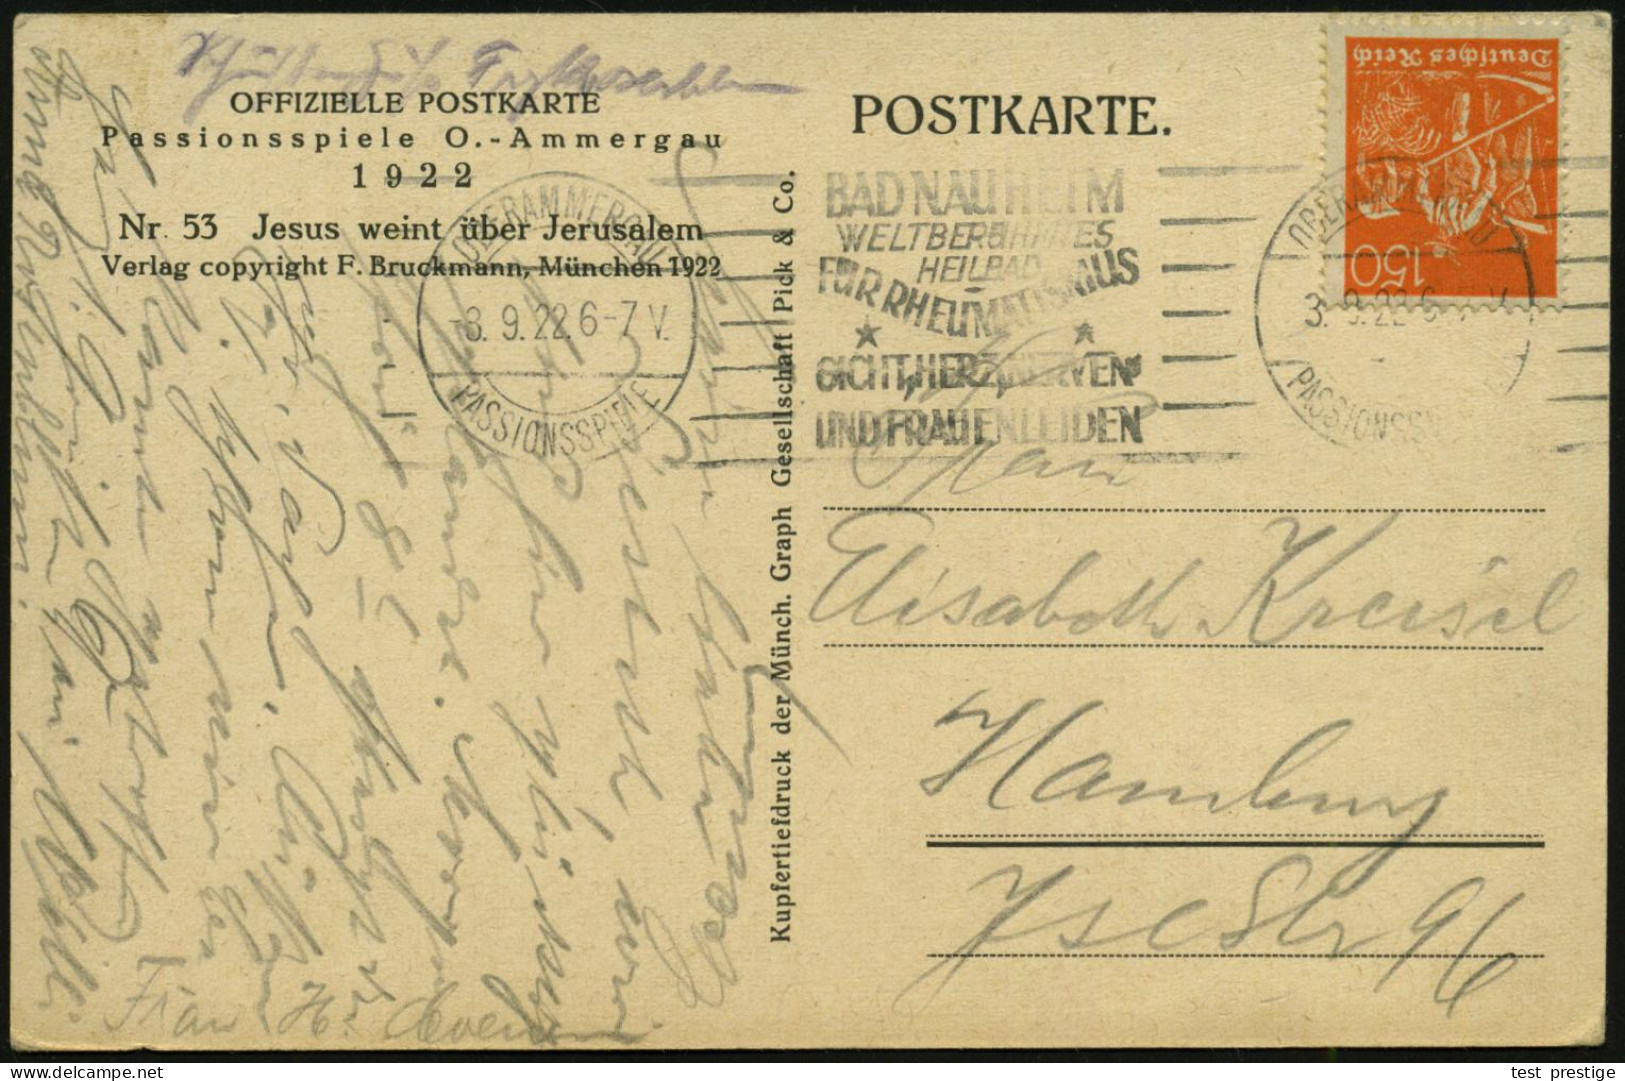 OBERAMMERGAU/ PASSIONSSPIELE/ BAD NAUHEIM/ ..HEILBAD/ FÜR RHEUMATISMUS/ GICHT.. 1922 (8.9.) Seltener Band-MWSt (Sonderfo - Krankheiten